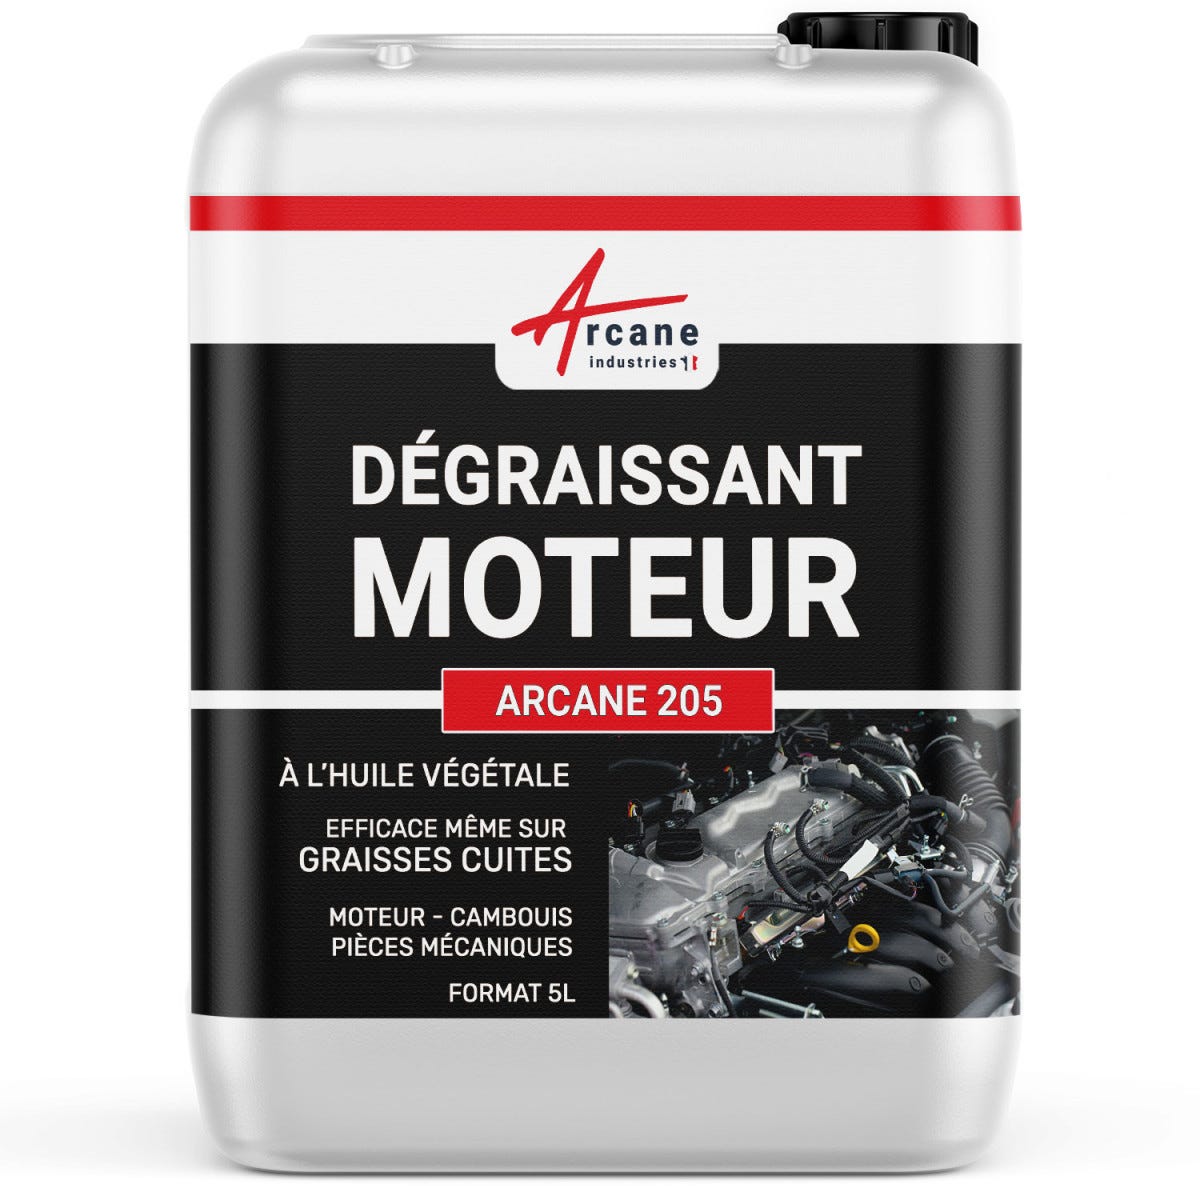 DÉGRAISSANT MOTEURS - Dégraissant moteur graisses épaisses cambouis molykote Ester méthylique de colza, - 5 L - - ARCANE INDUSTRIES 0